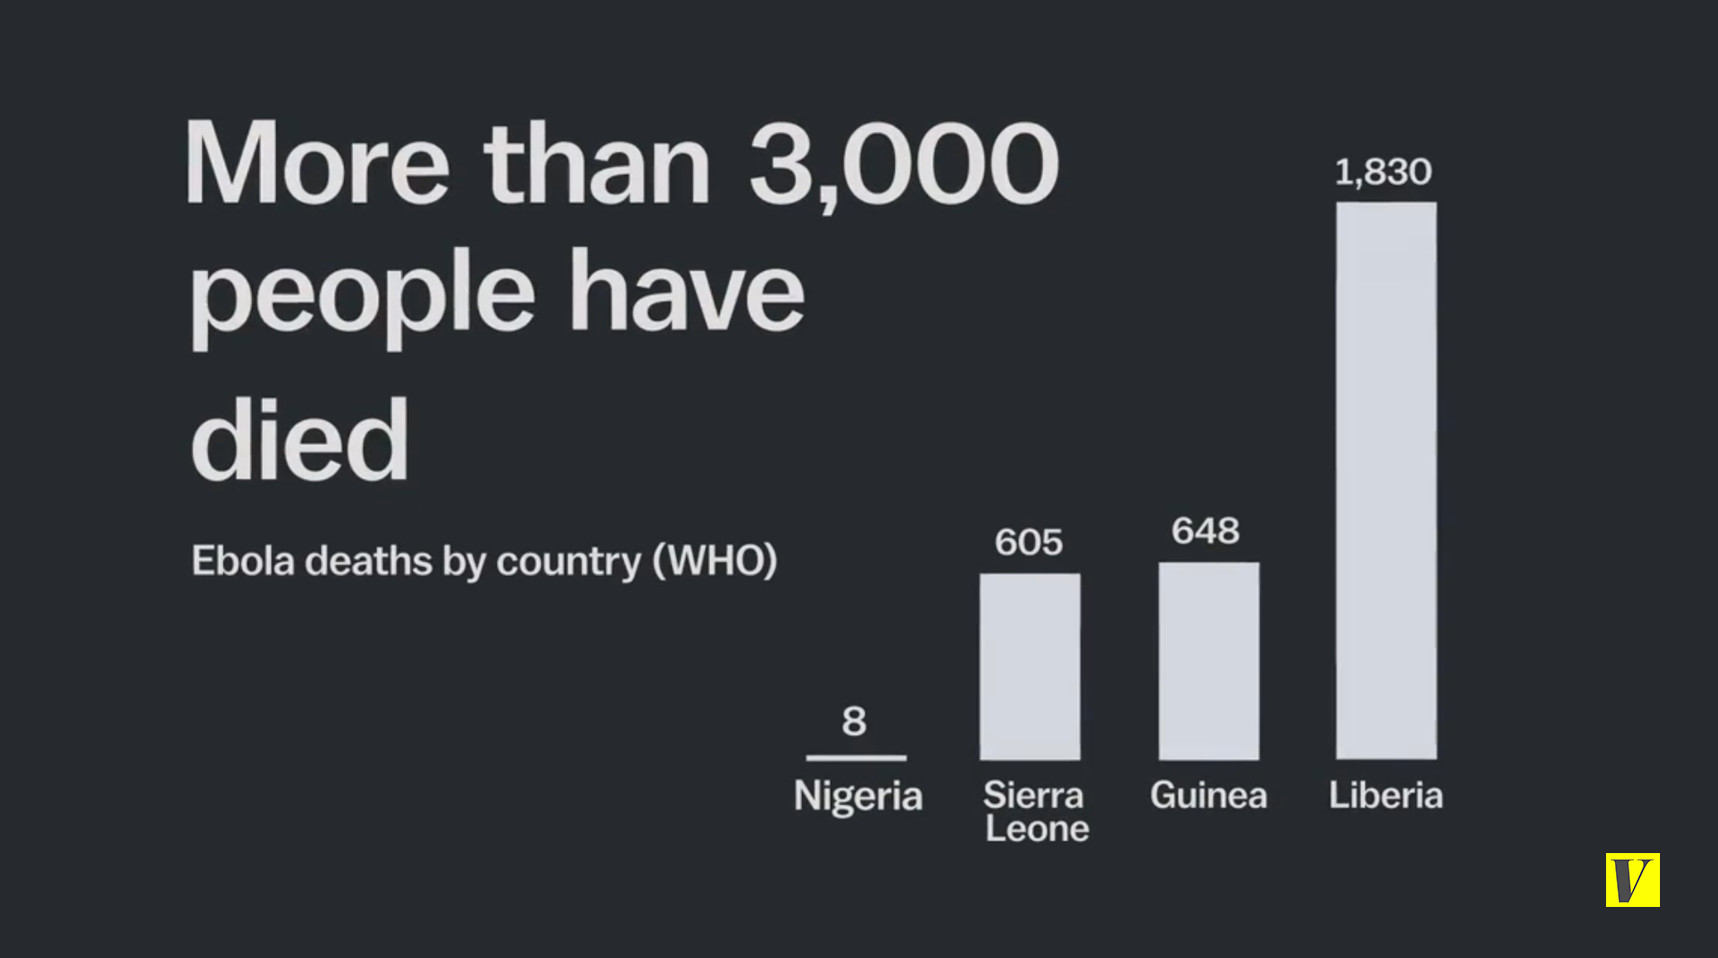 Ebola deaths, 2014 outbreak